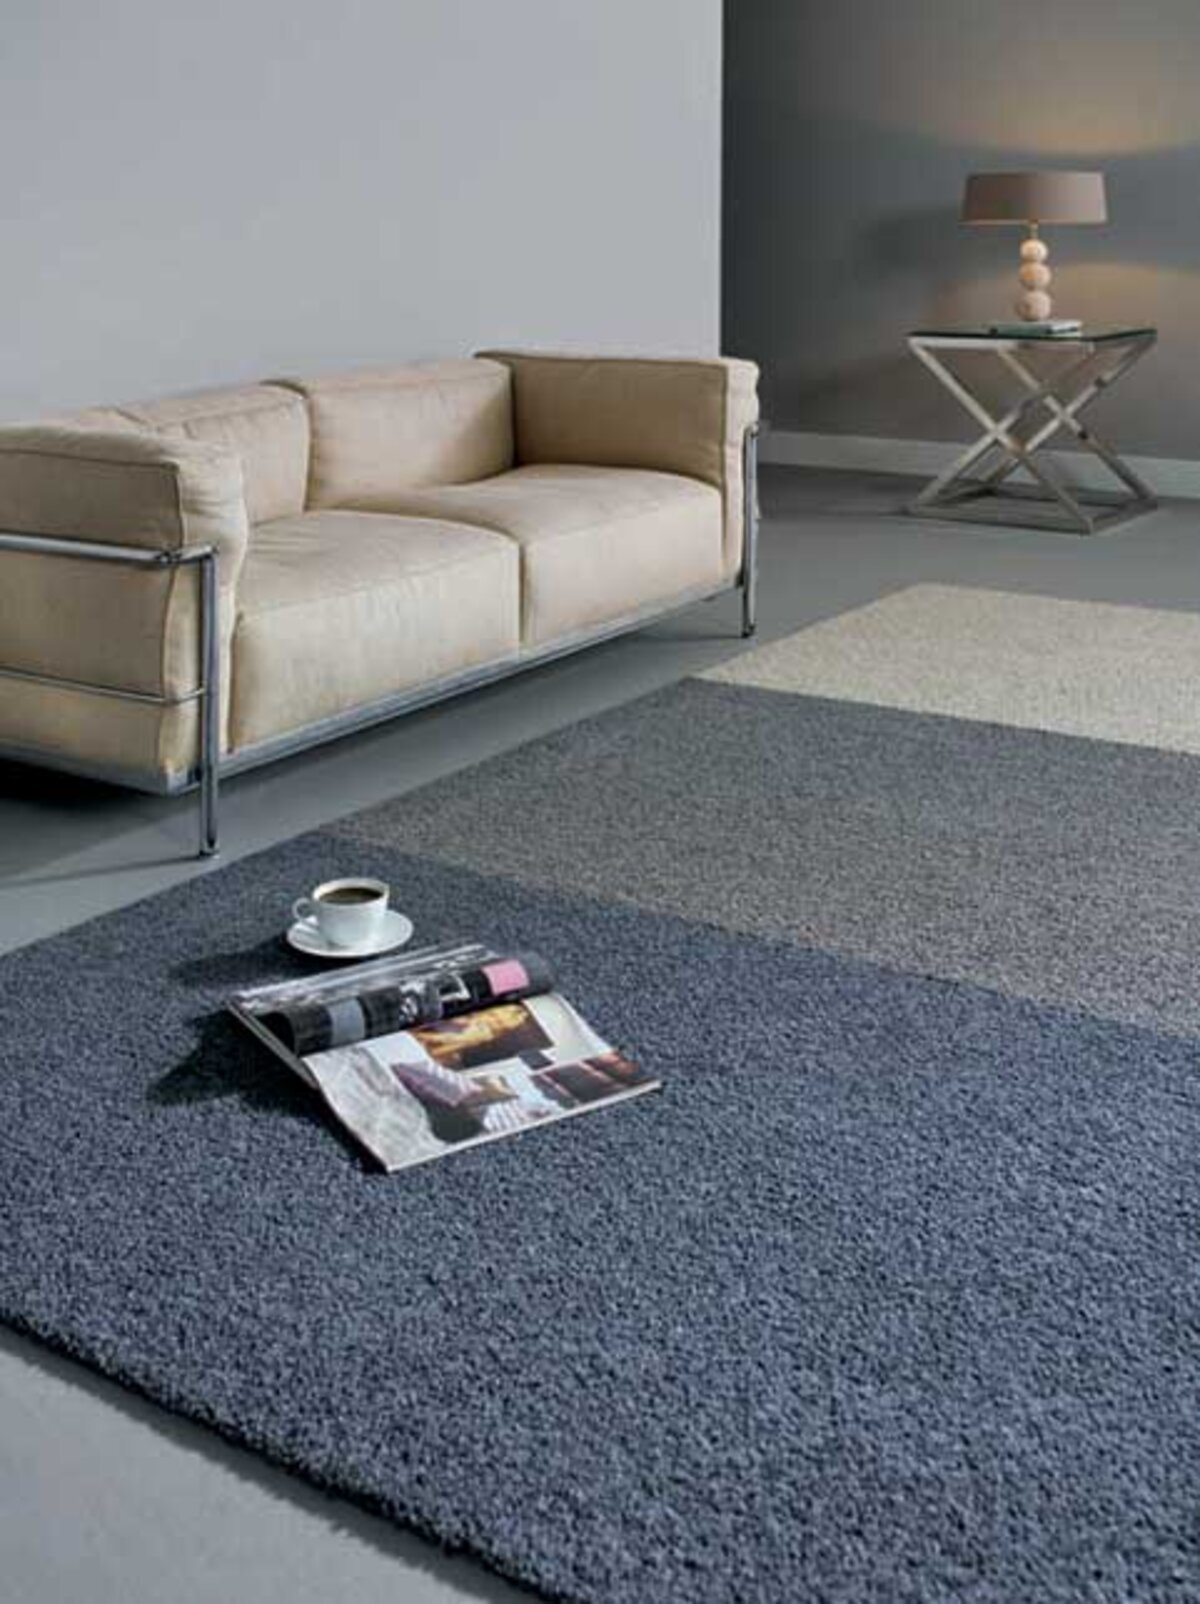 Spanning Belastingen pijnlijk Heuga introduceert Luxe en duurzame tapijttegelcollecties van wol